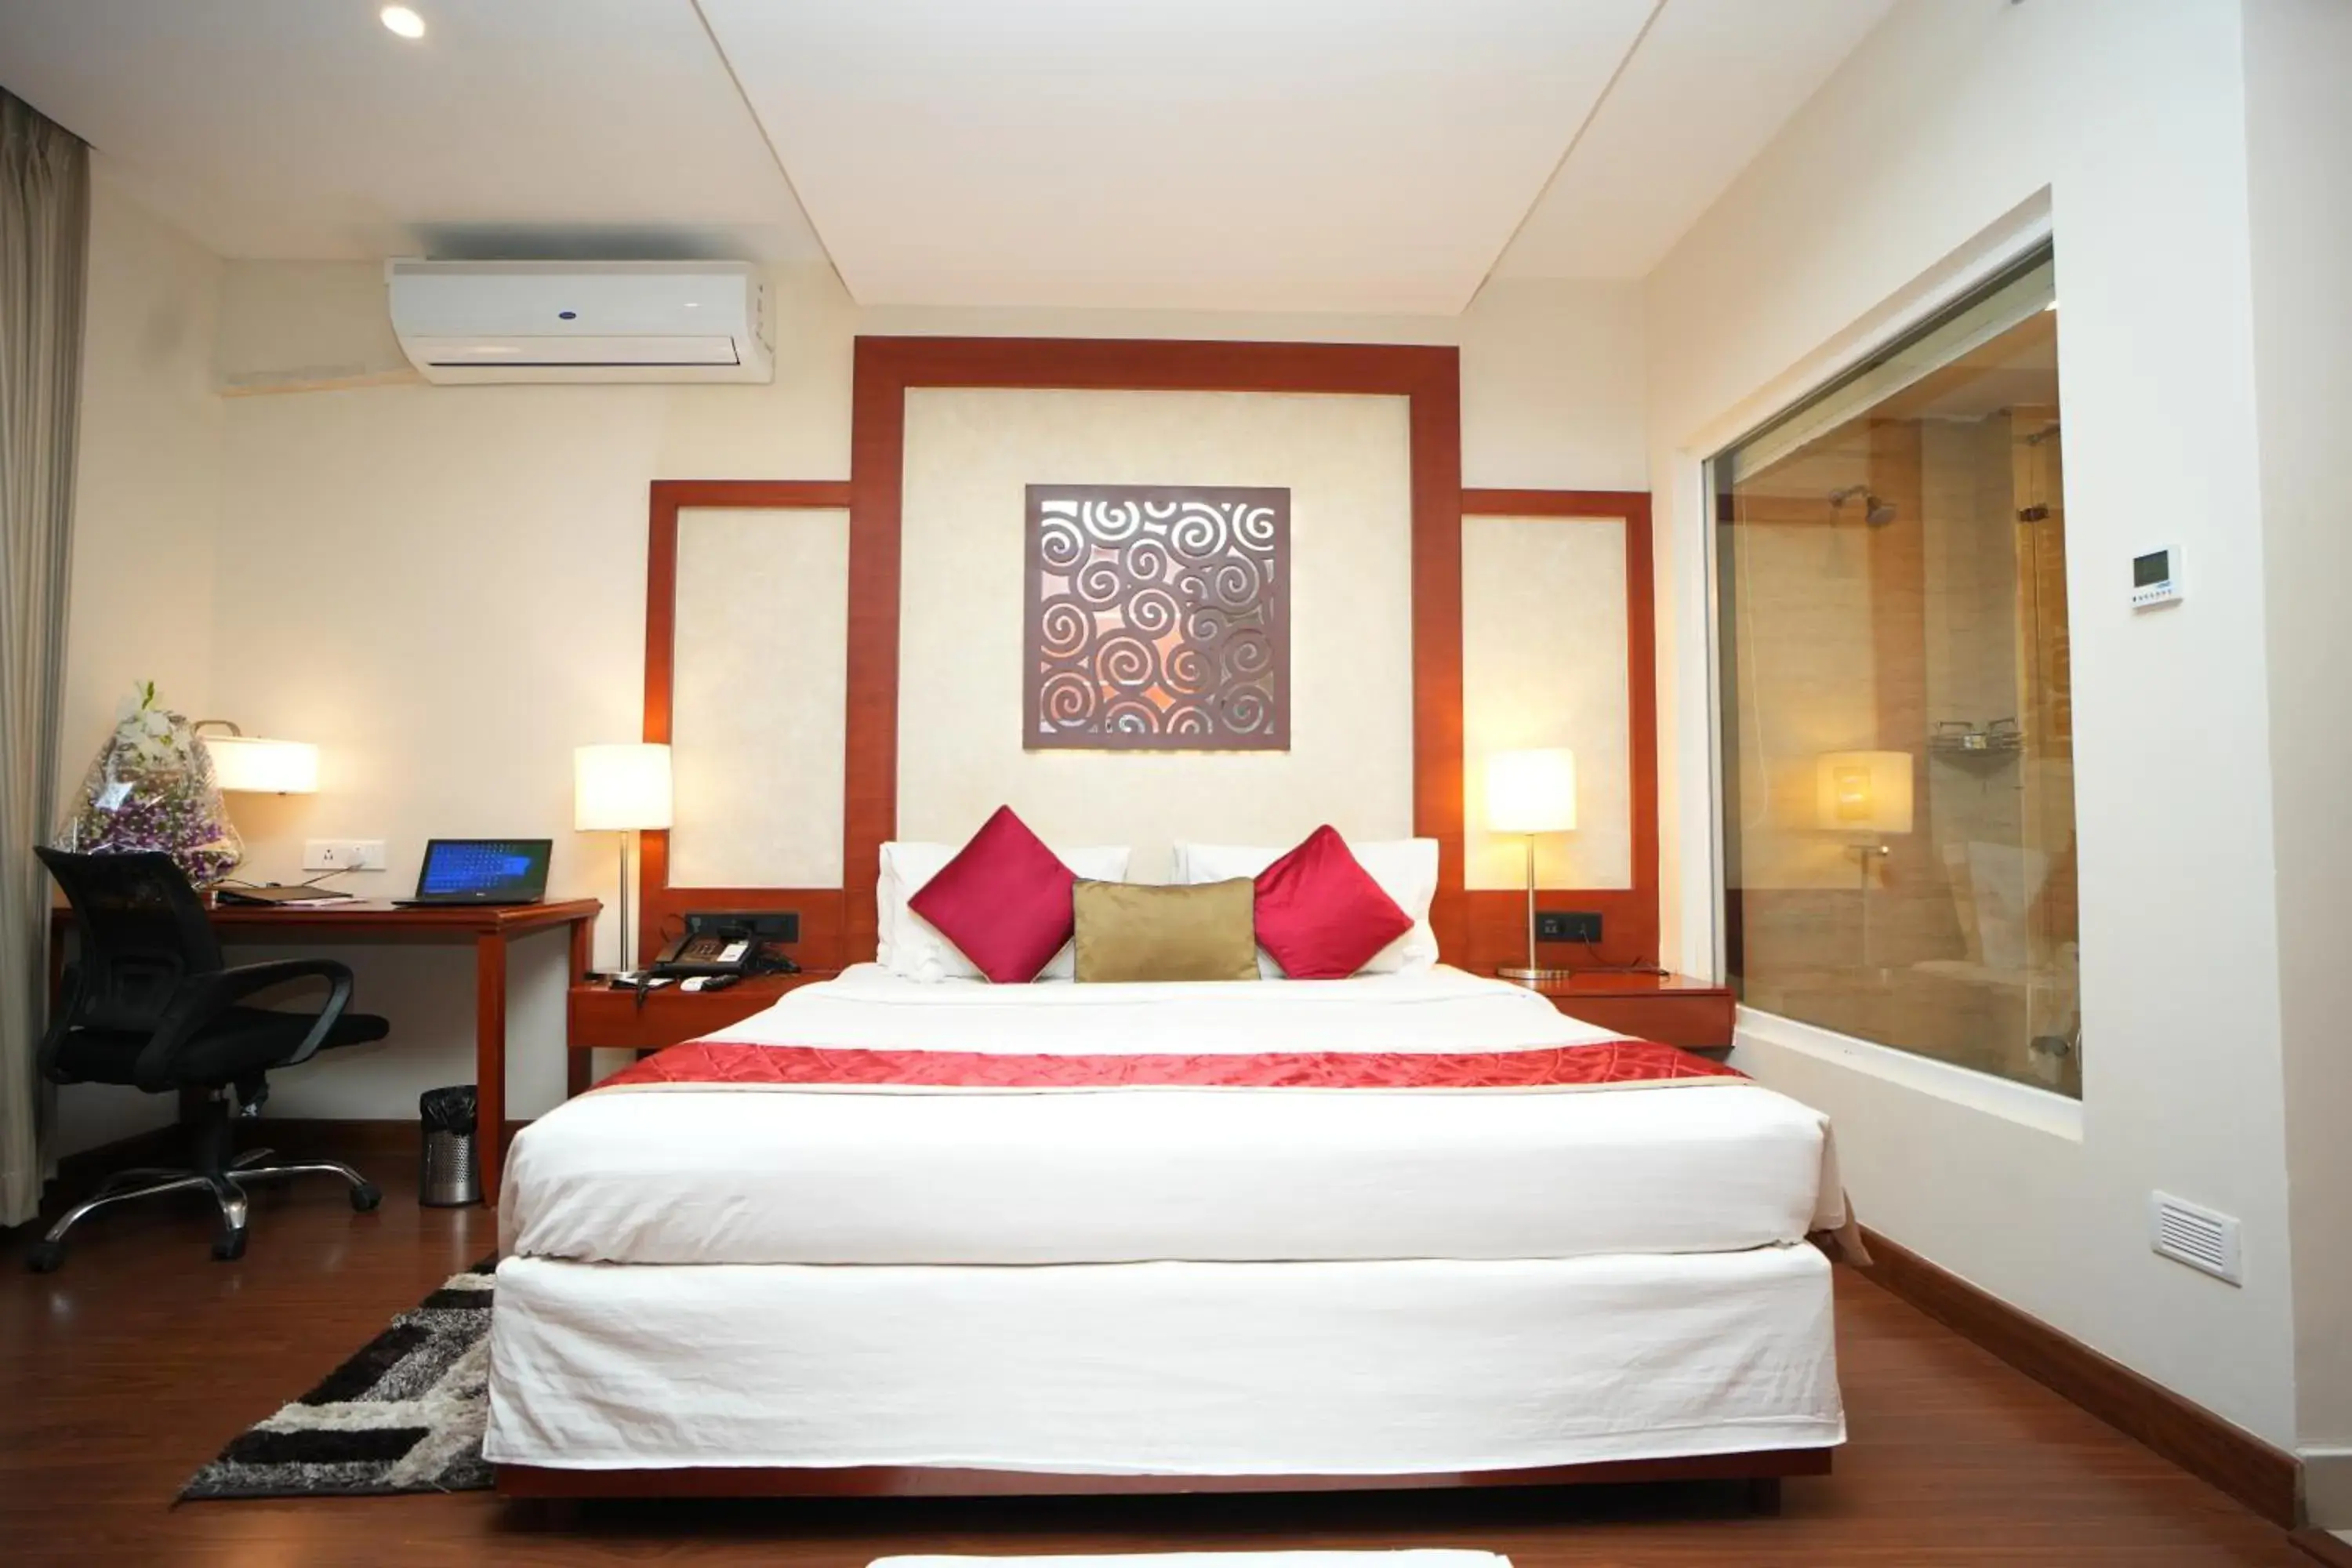 Bedroom, Bed in Siesta Hitech Hotel